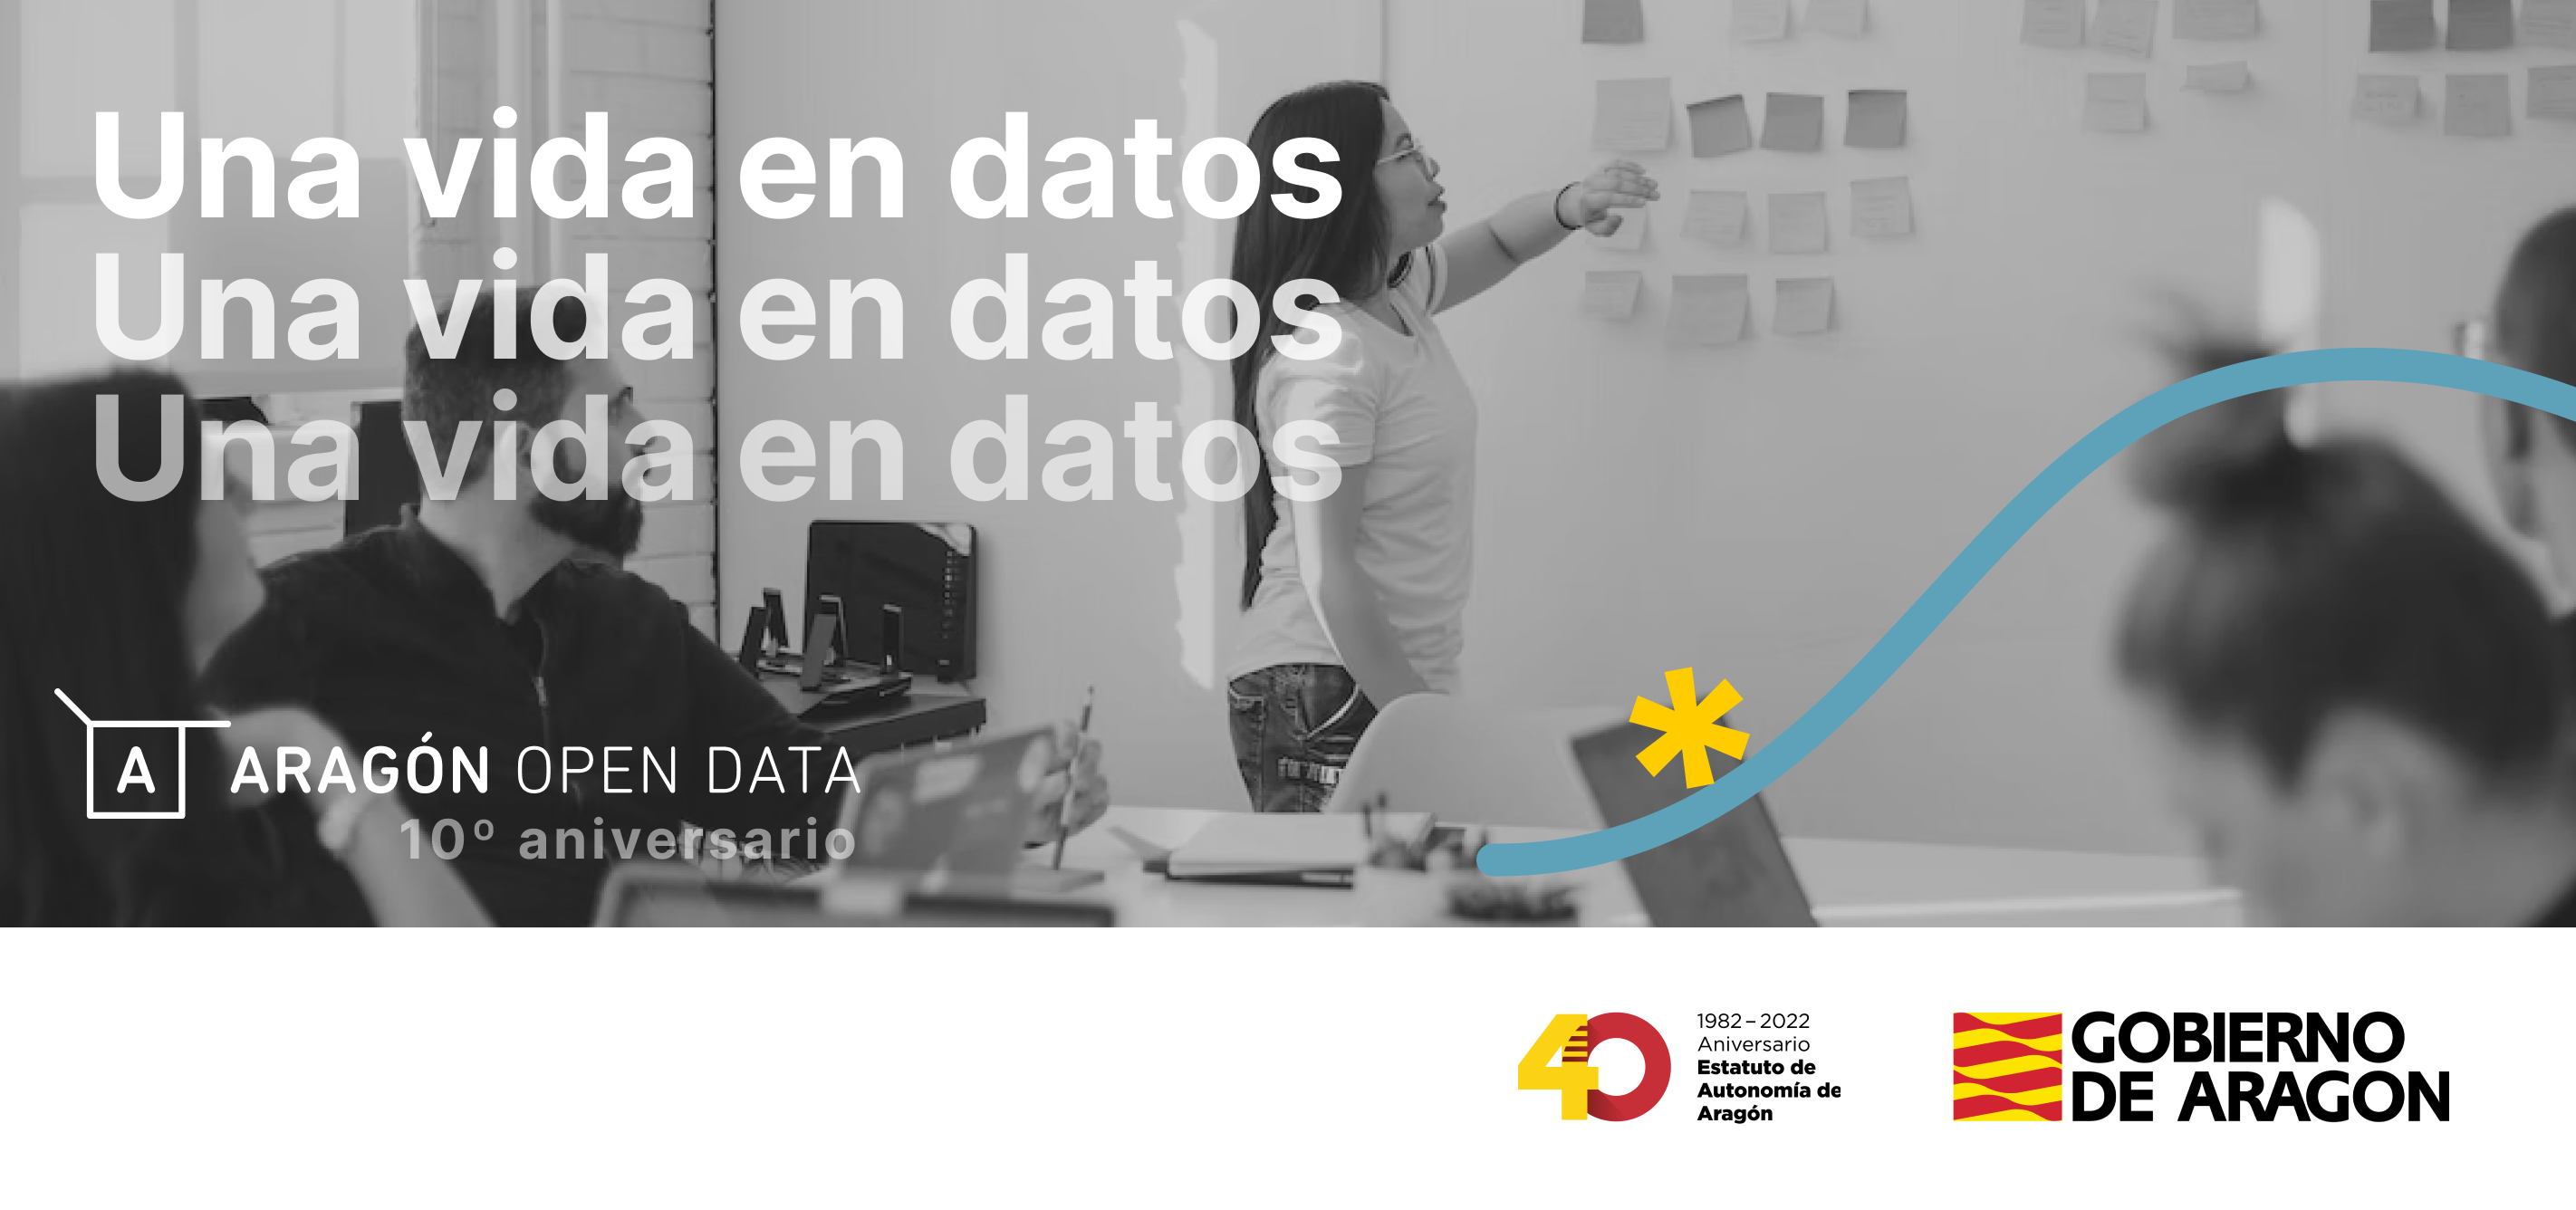 Una vida en datos. Datathon 10 años de Aragón Open Data